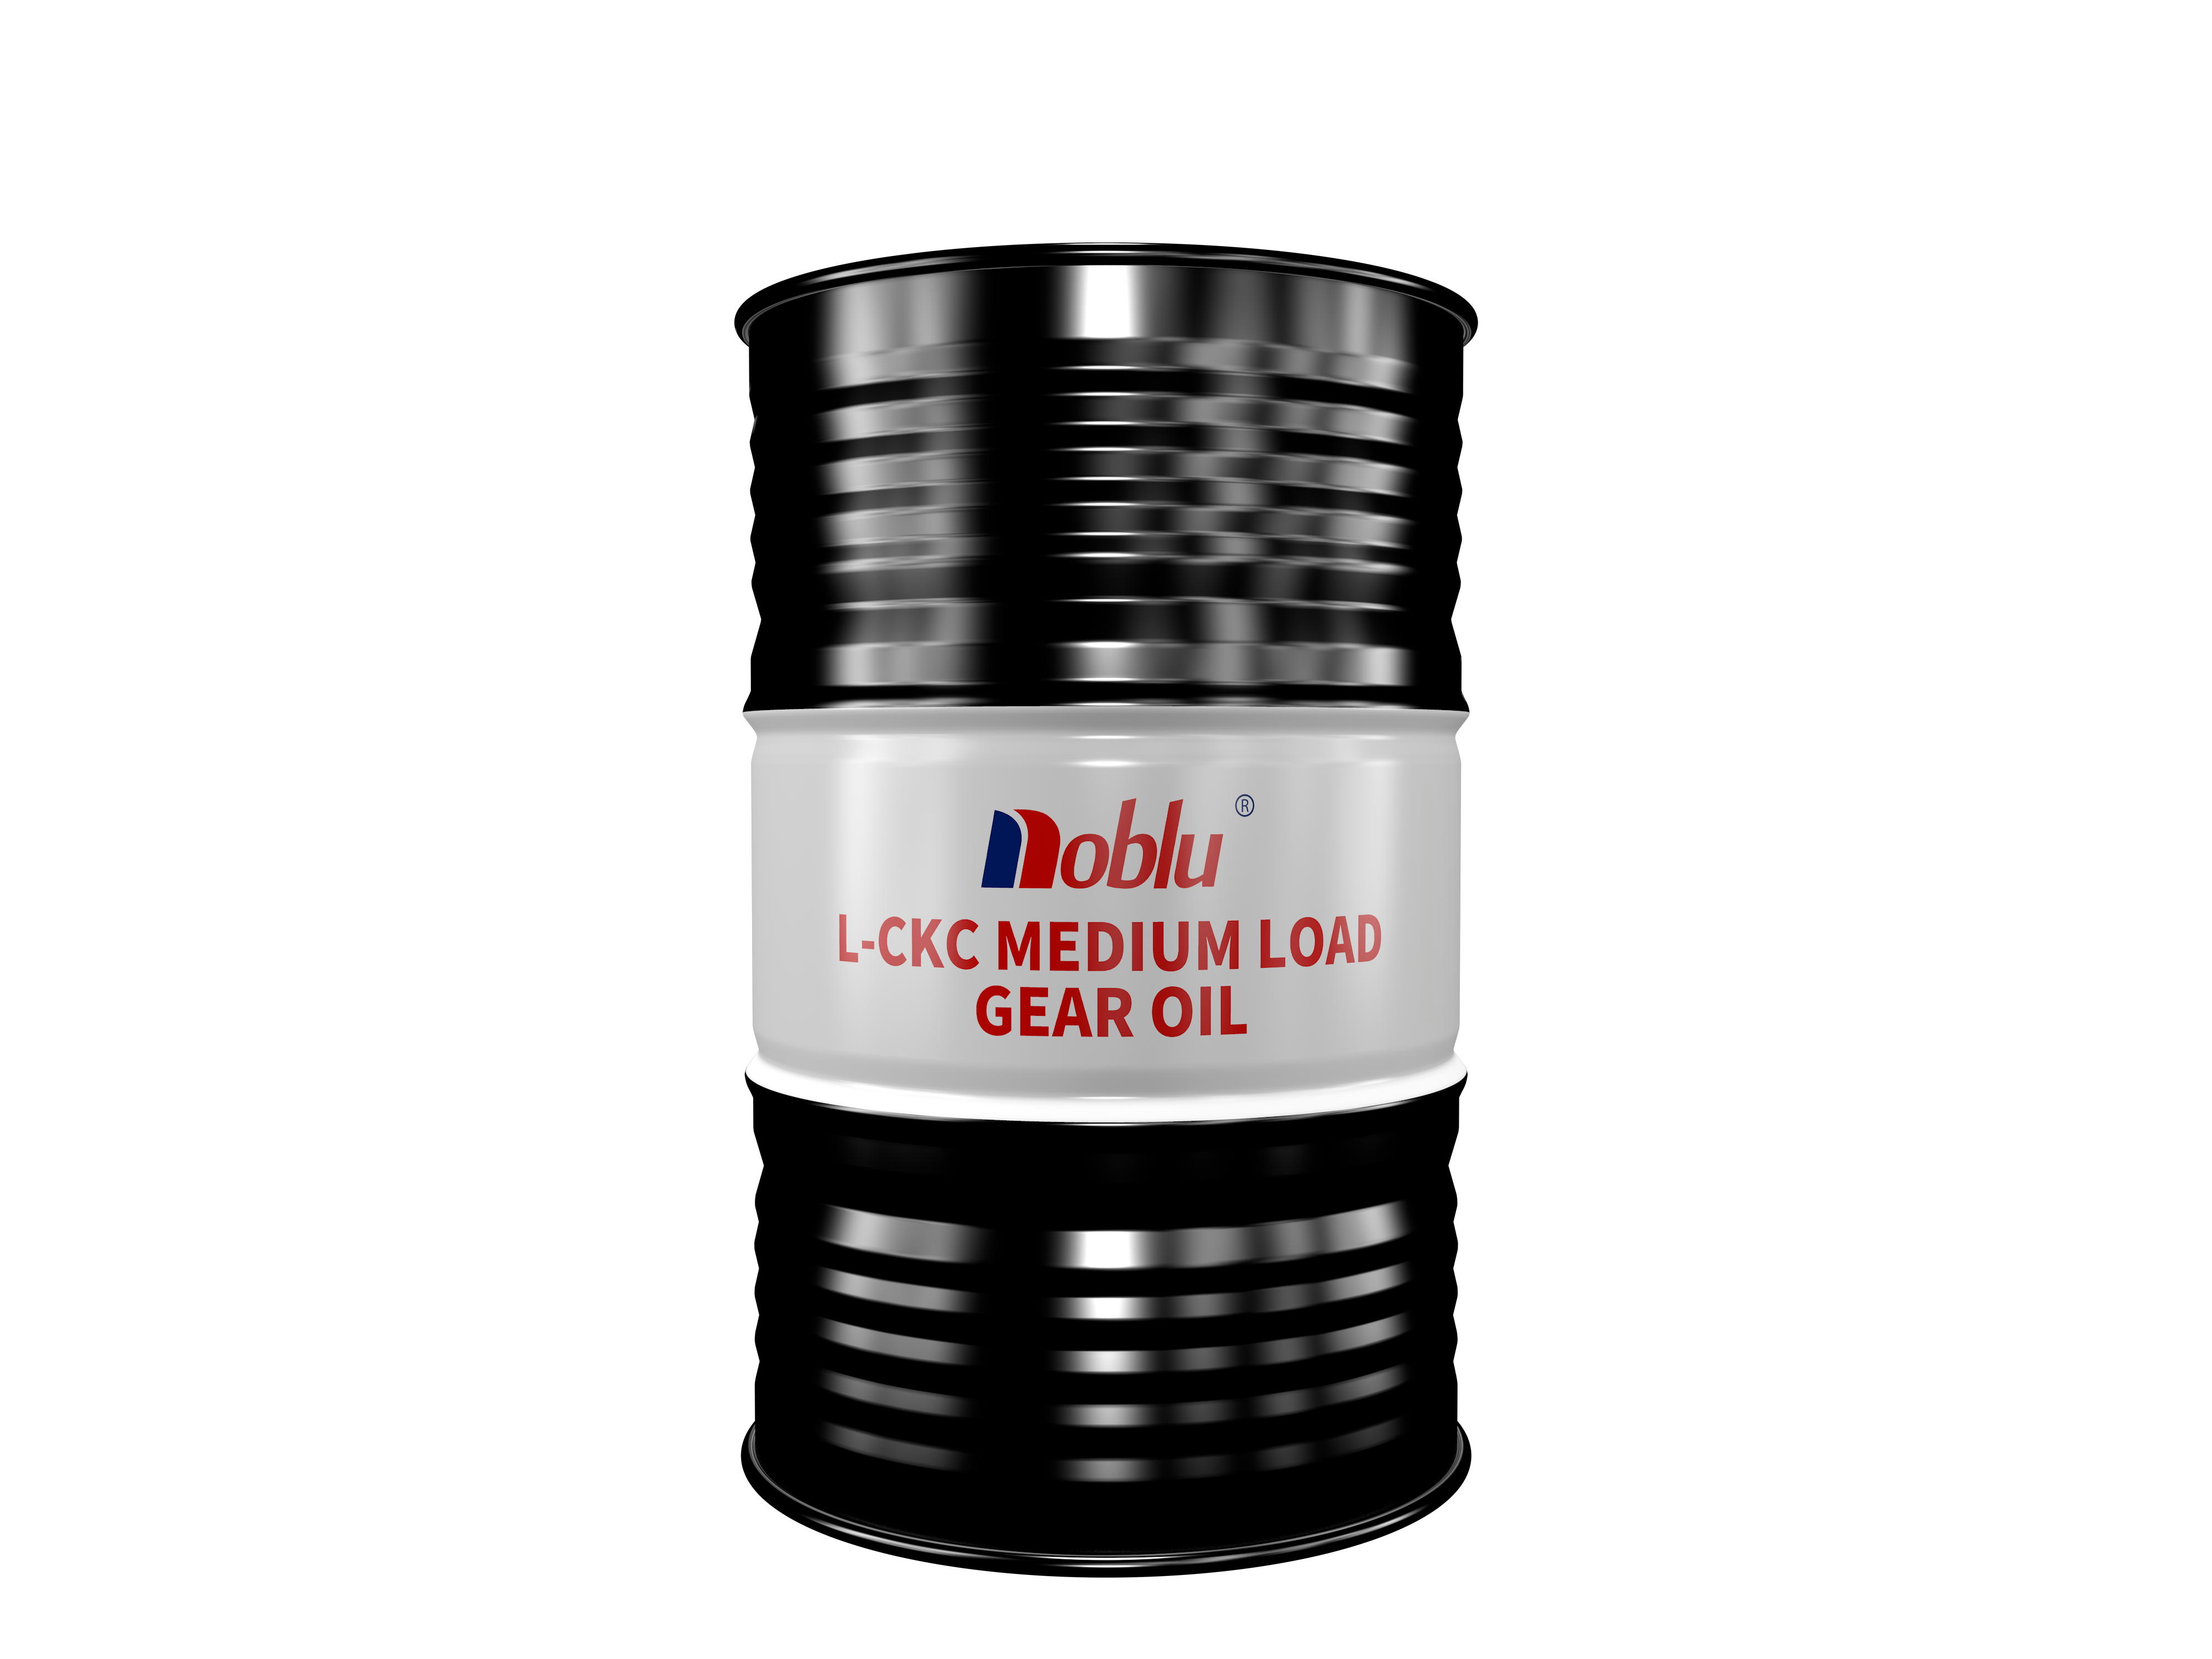 L-CKC medium load gear oil